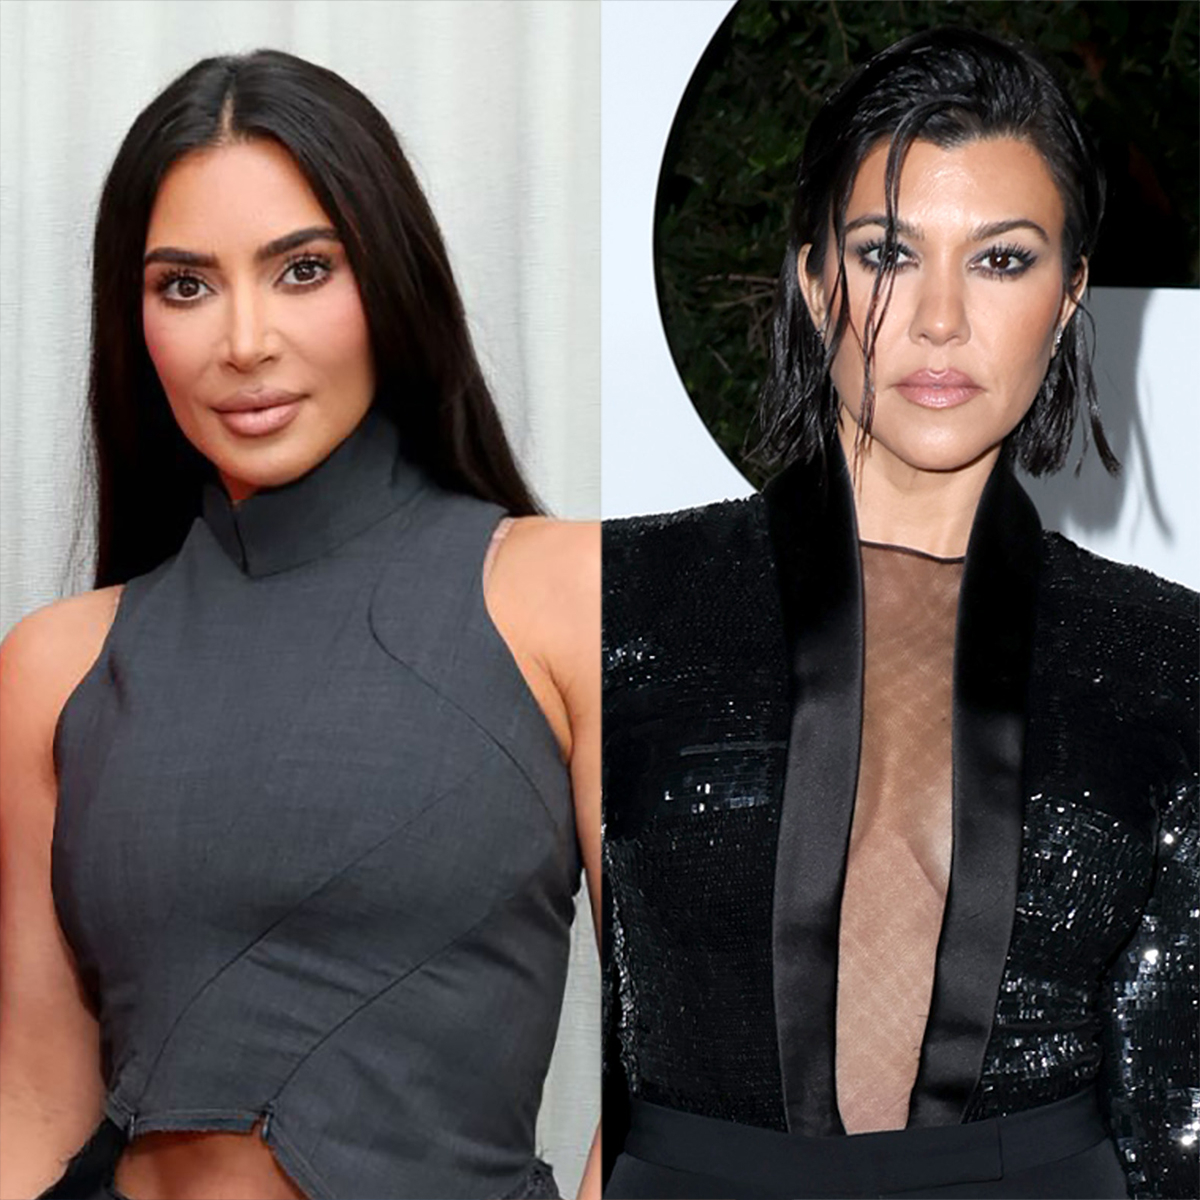 Why Kim Kardashian Is Feuding With "Diva" Kourtney Kardashian